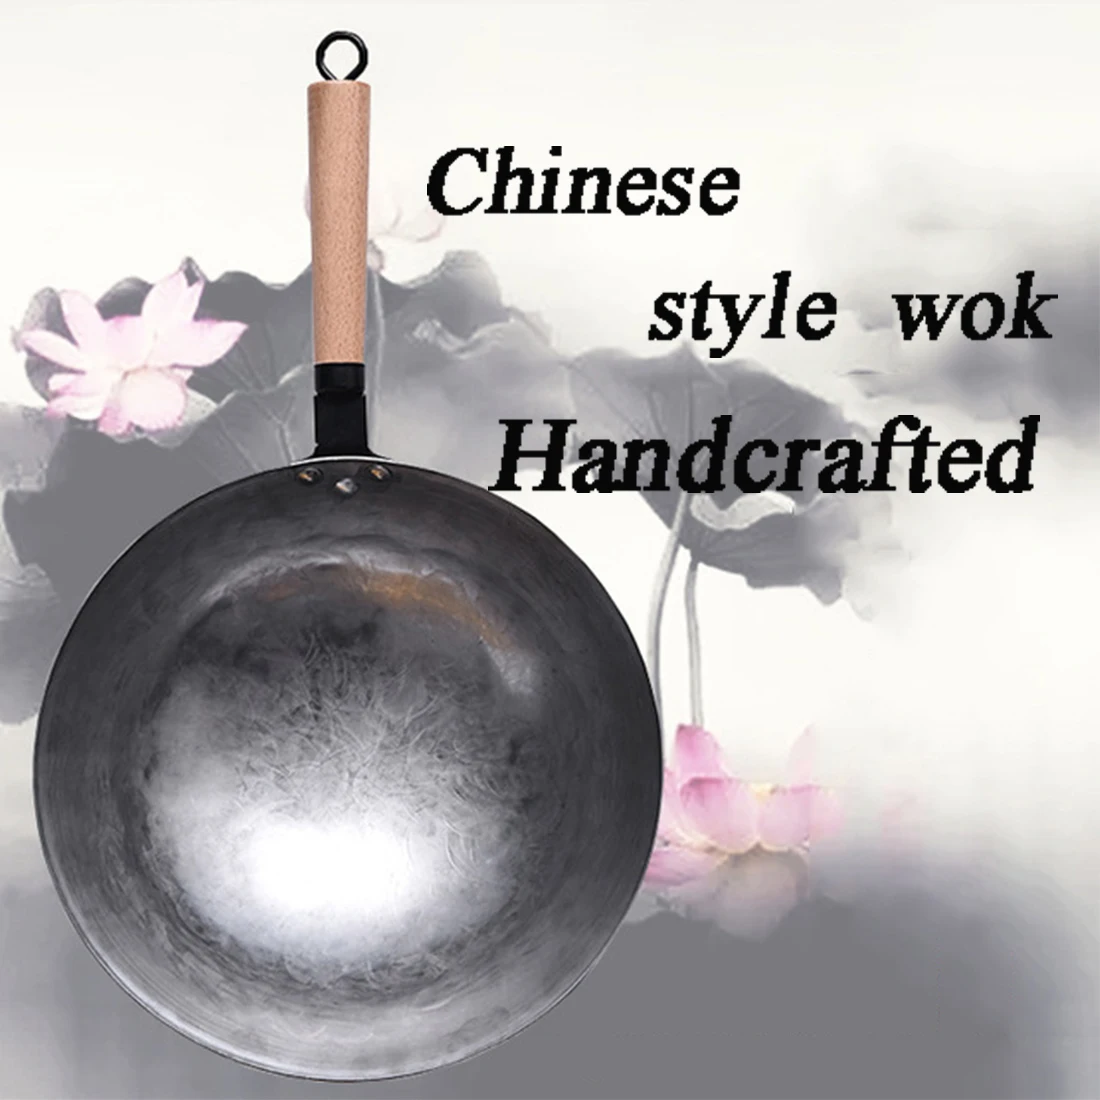 Чистый китайский стиль, железный ВОК, традиционный железный вок ручной работы, сковорода с антипригарным покрытием, газовая плита, кухонная посуда, высокое качество